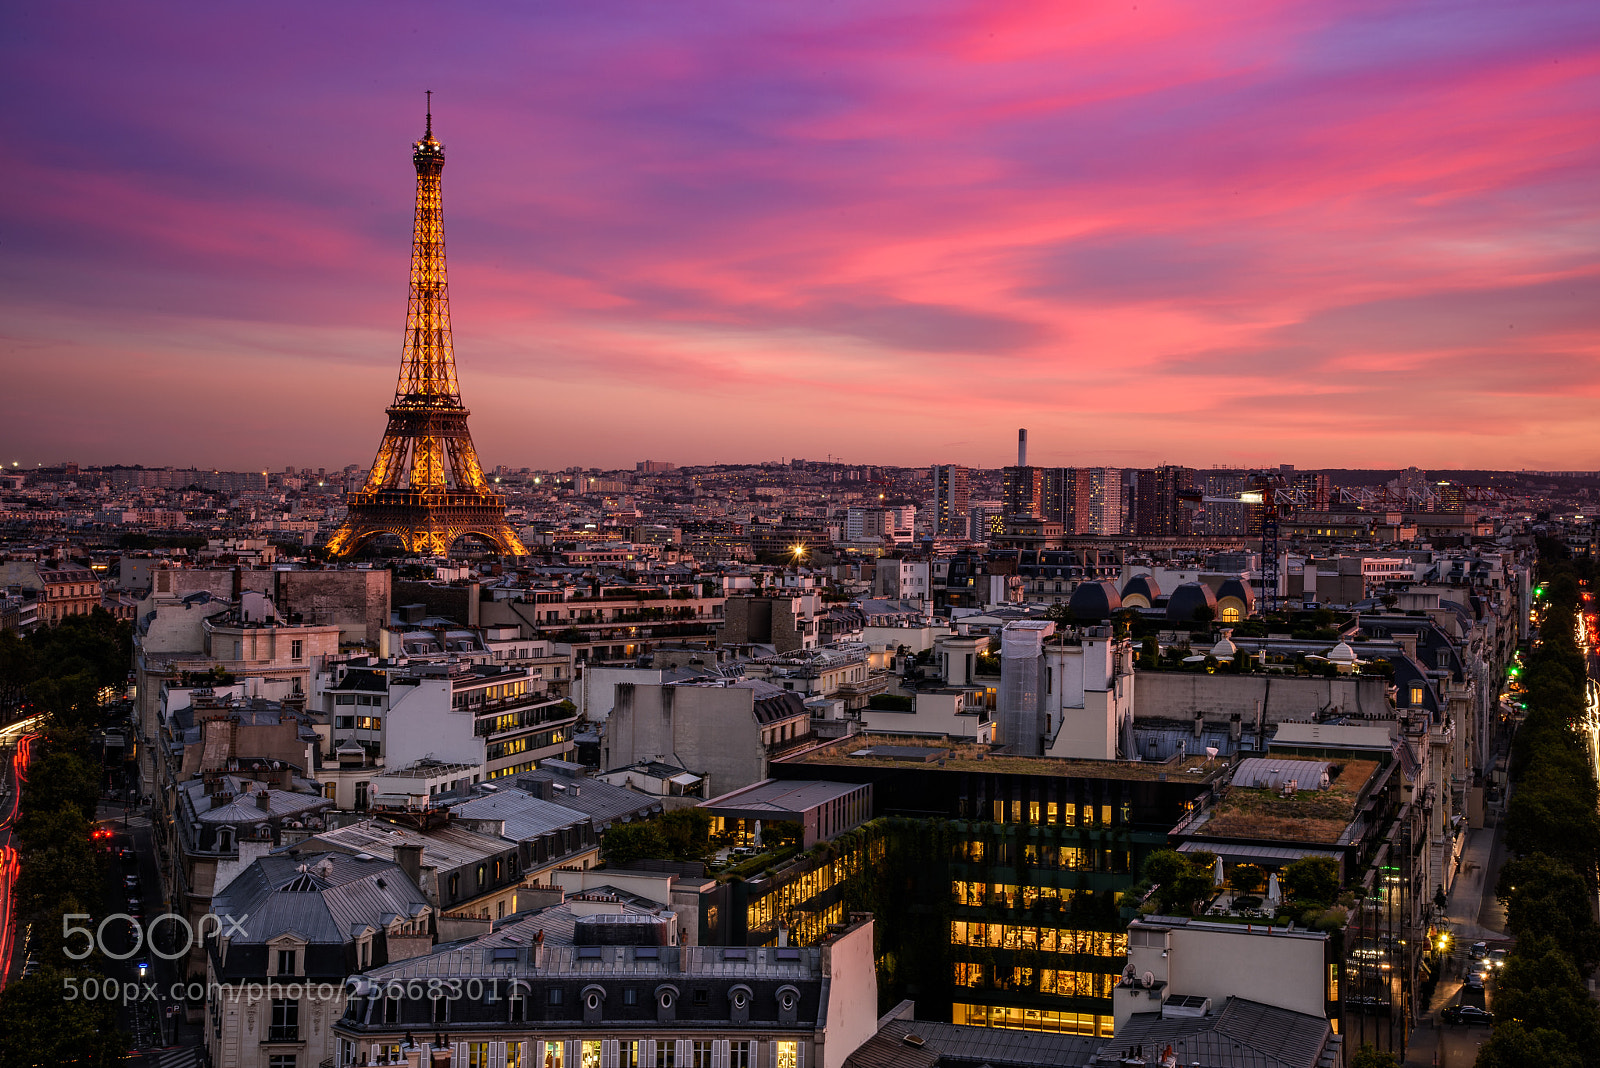 Nikon D810 sample photo. Sunset in paris photography